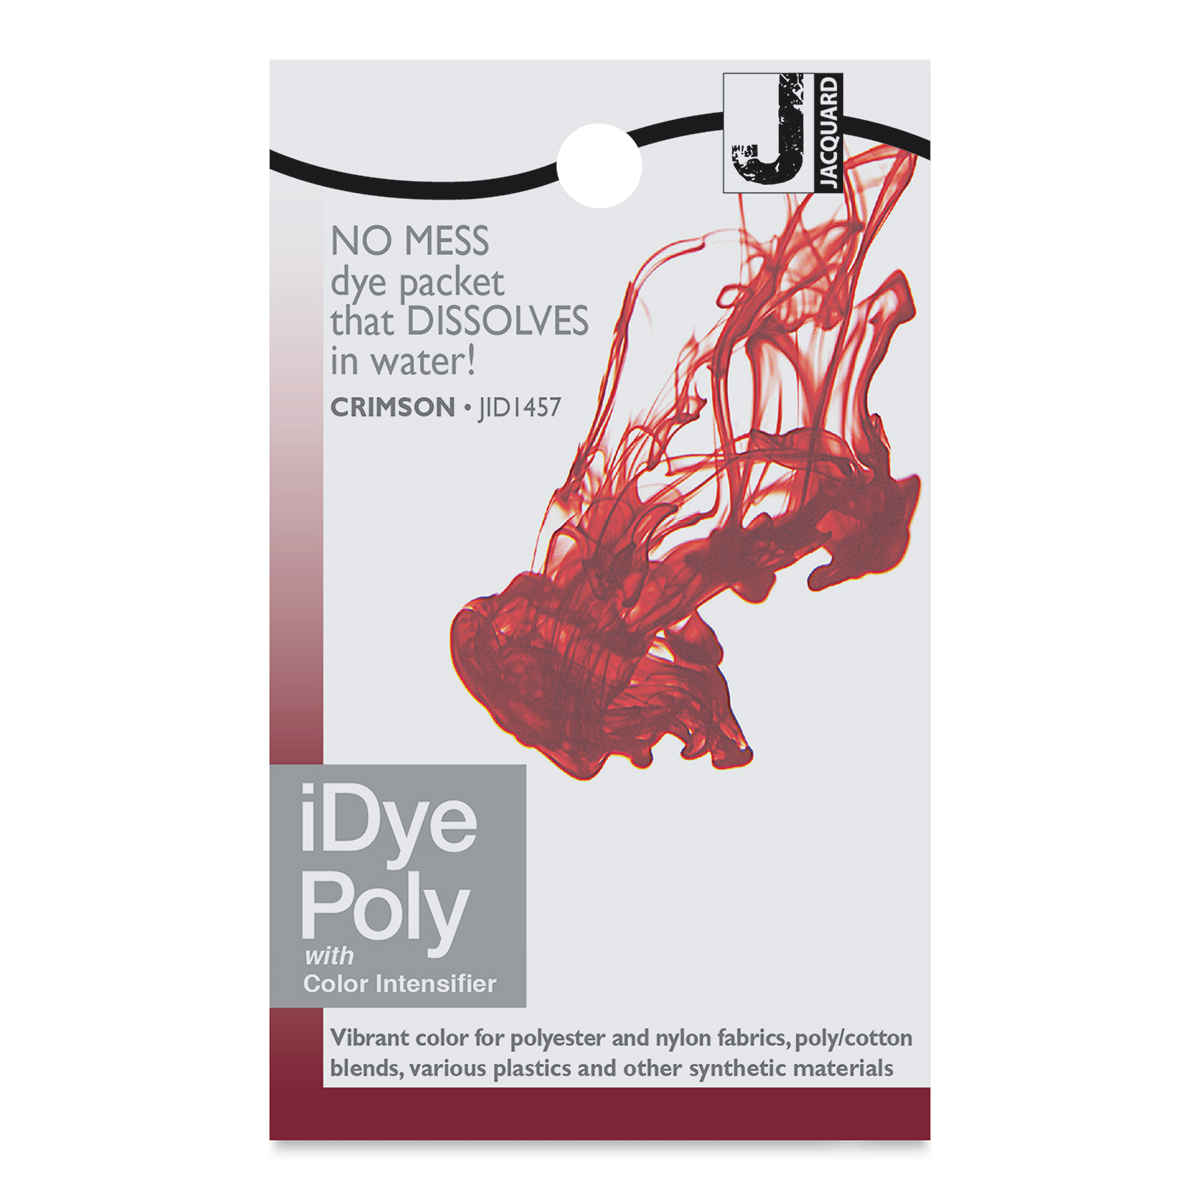 iDye Poly Pro Teinture Textile ☆ Teint le polyester & la polyamide ☆